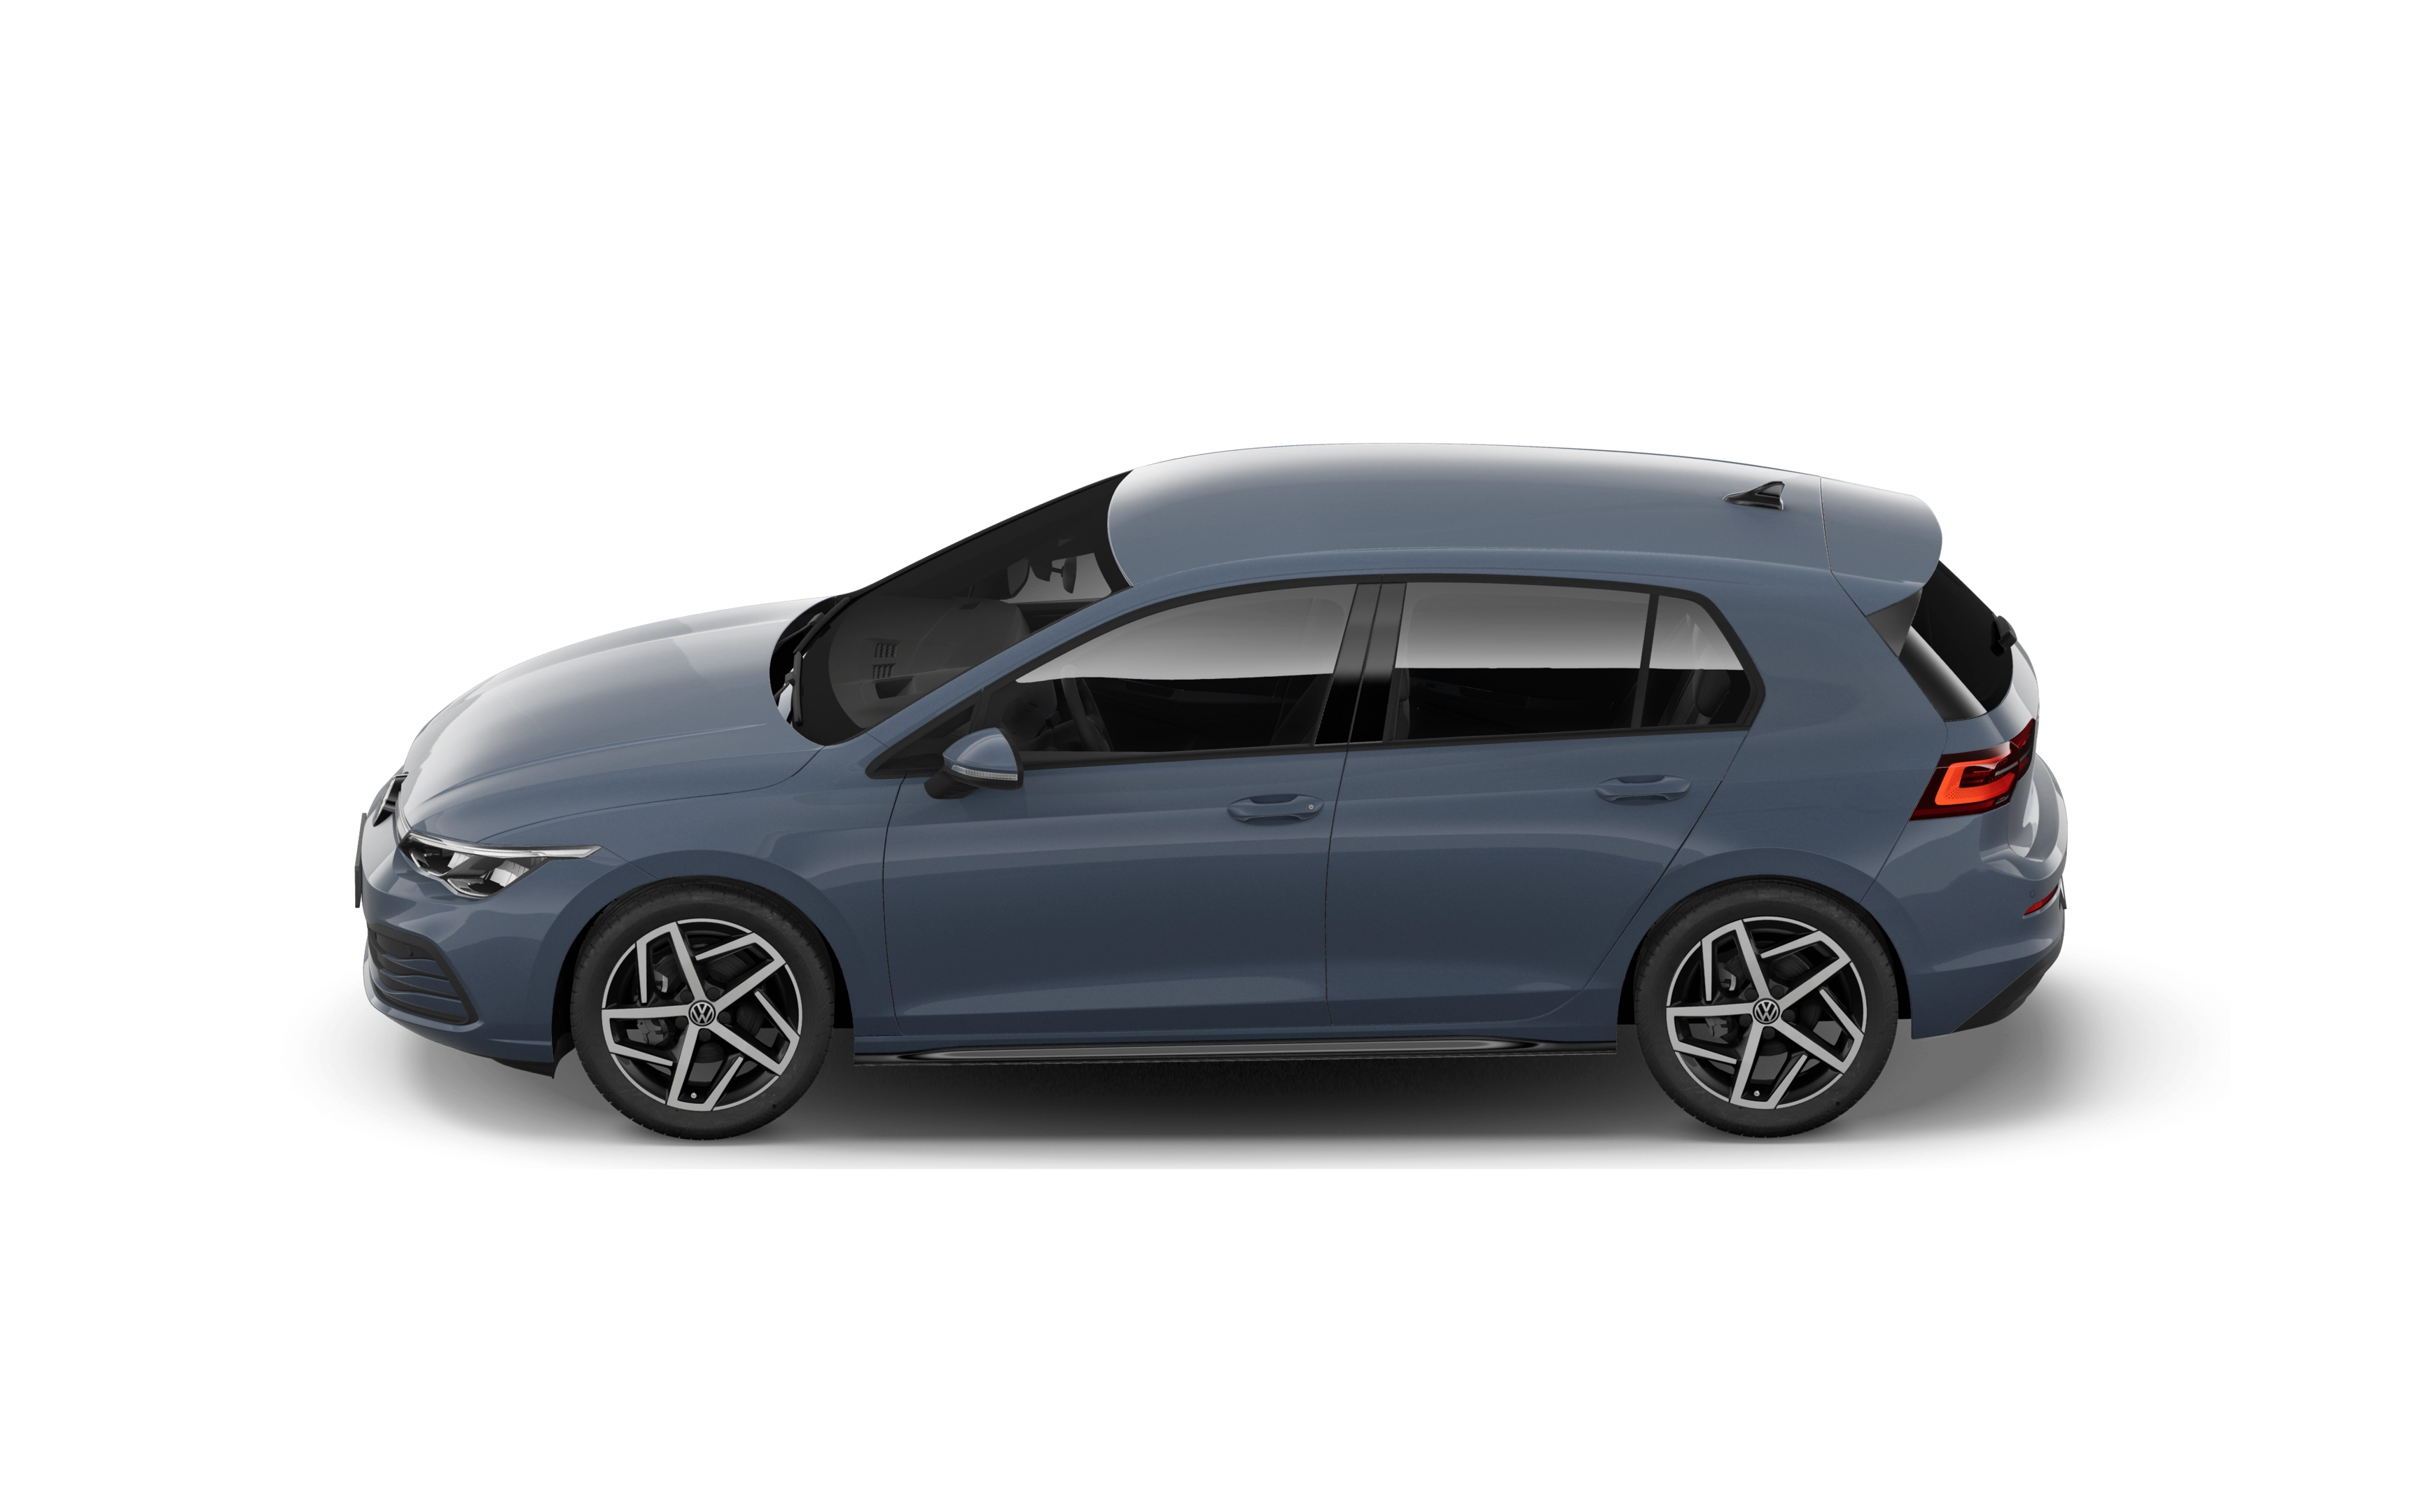 Volkswagen golf hatchback 2.0 tdi life 5 doors dsg